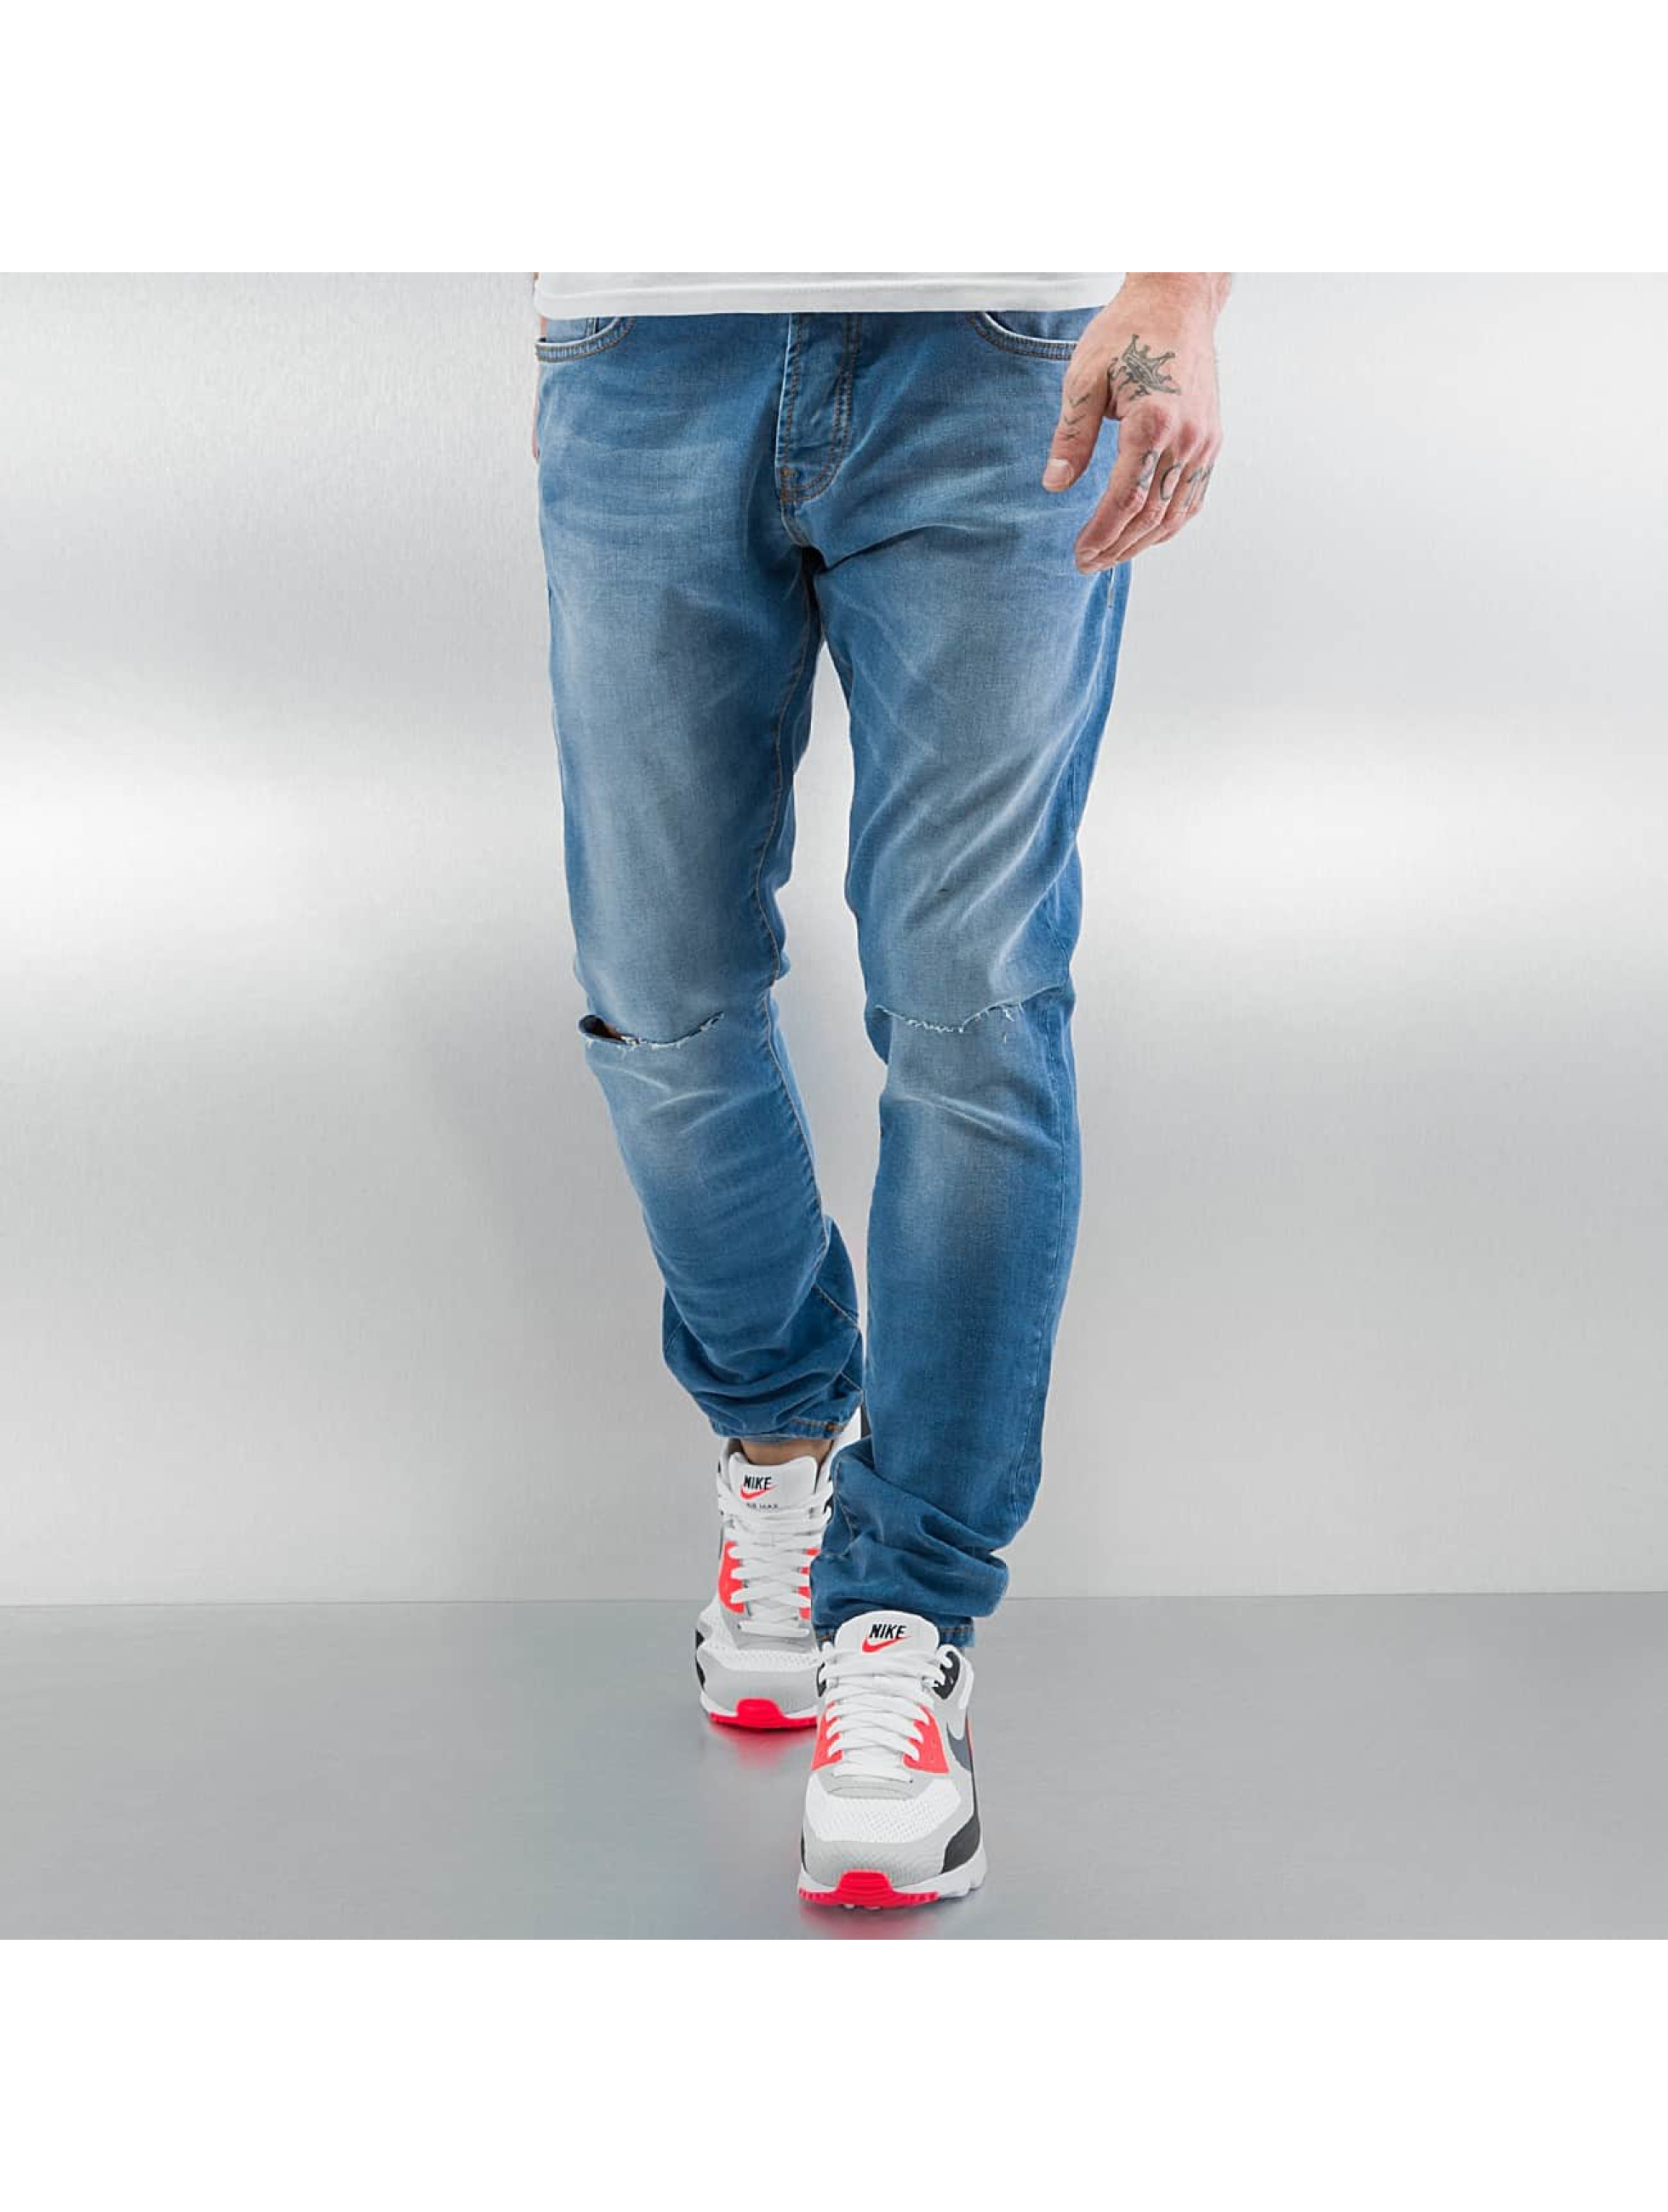 Skinny Jeans Nakoa in indigo